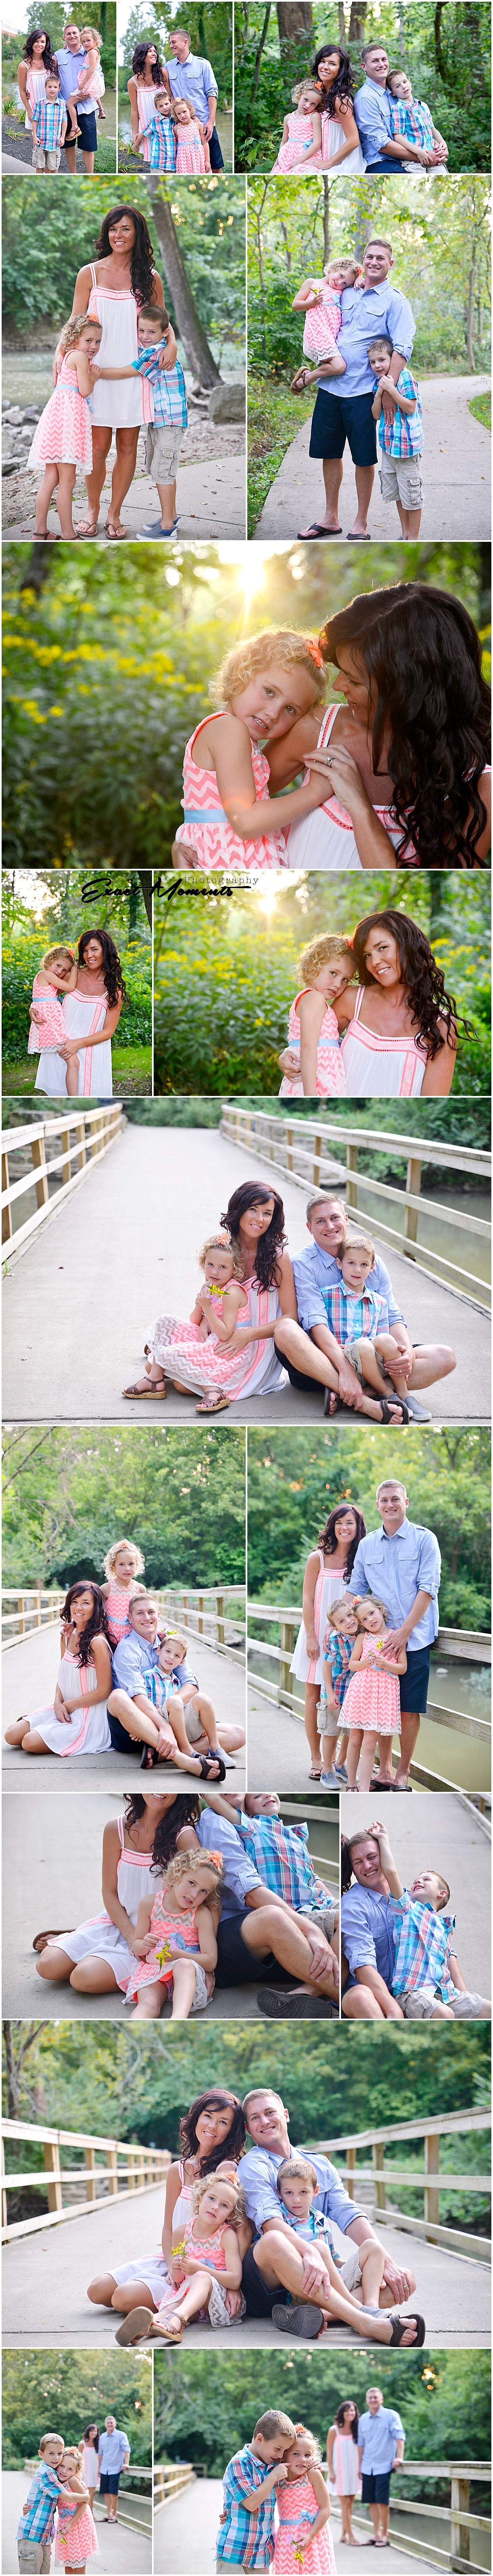 Gahanna Creekside Park Family photos